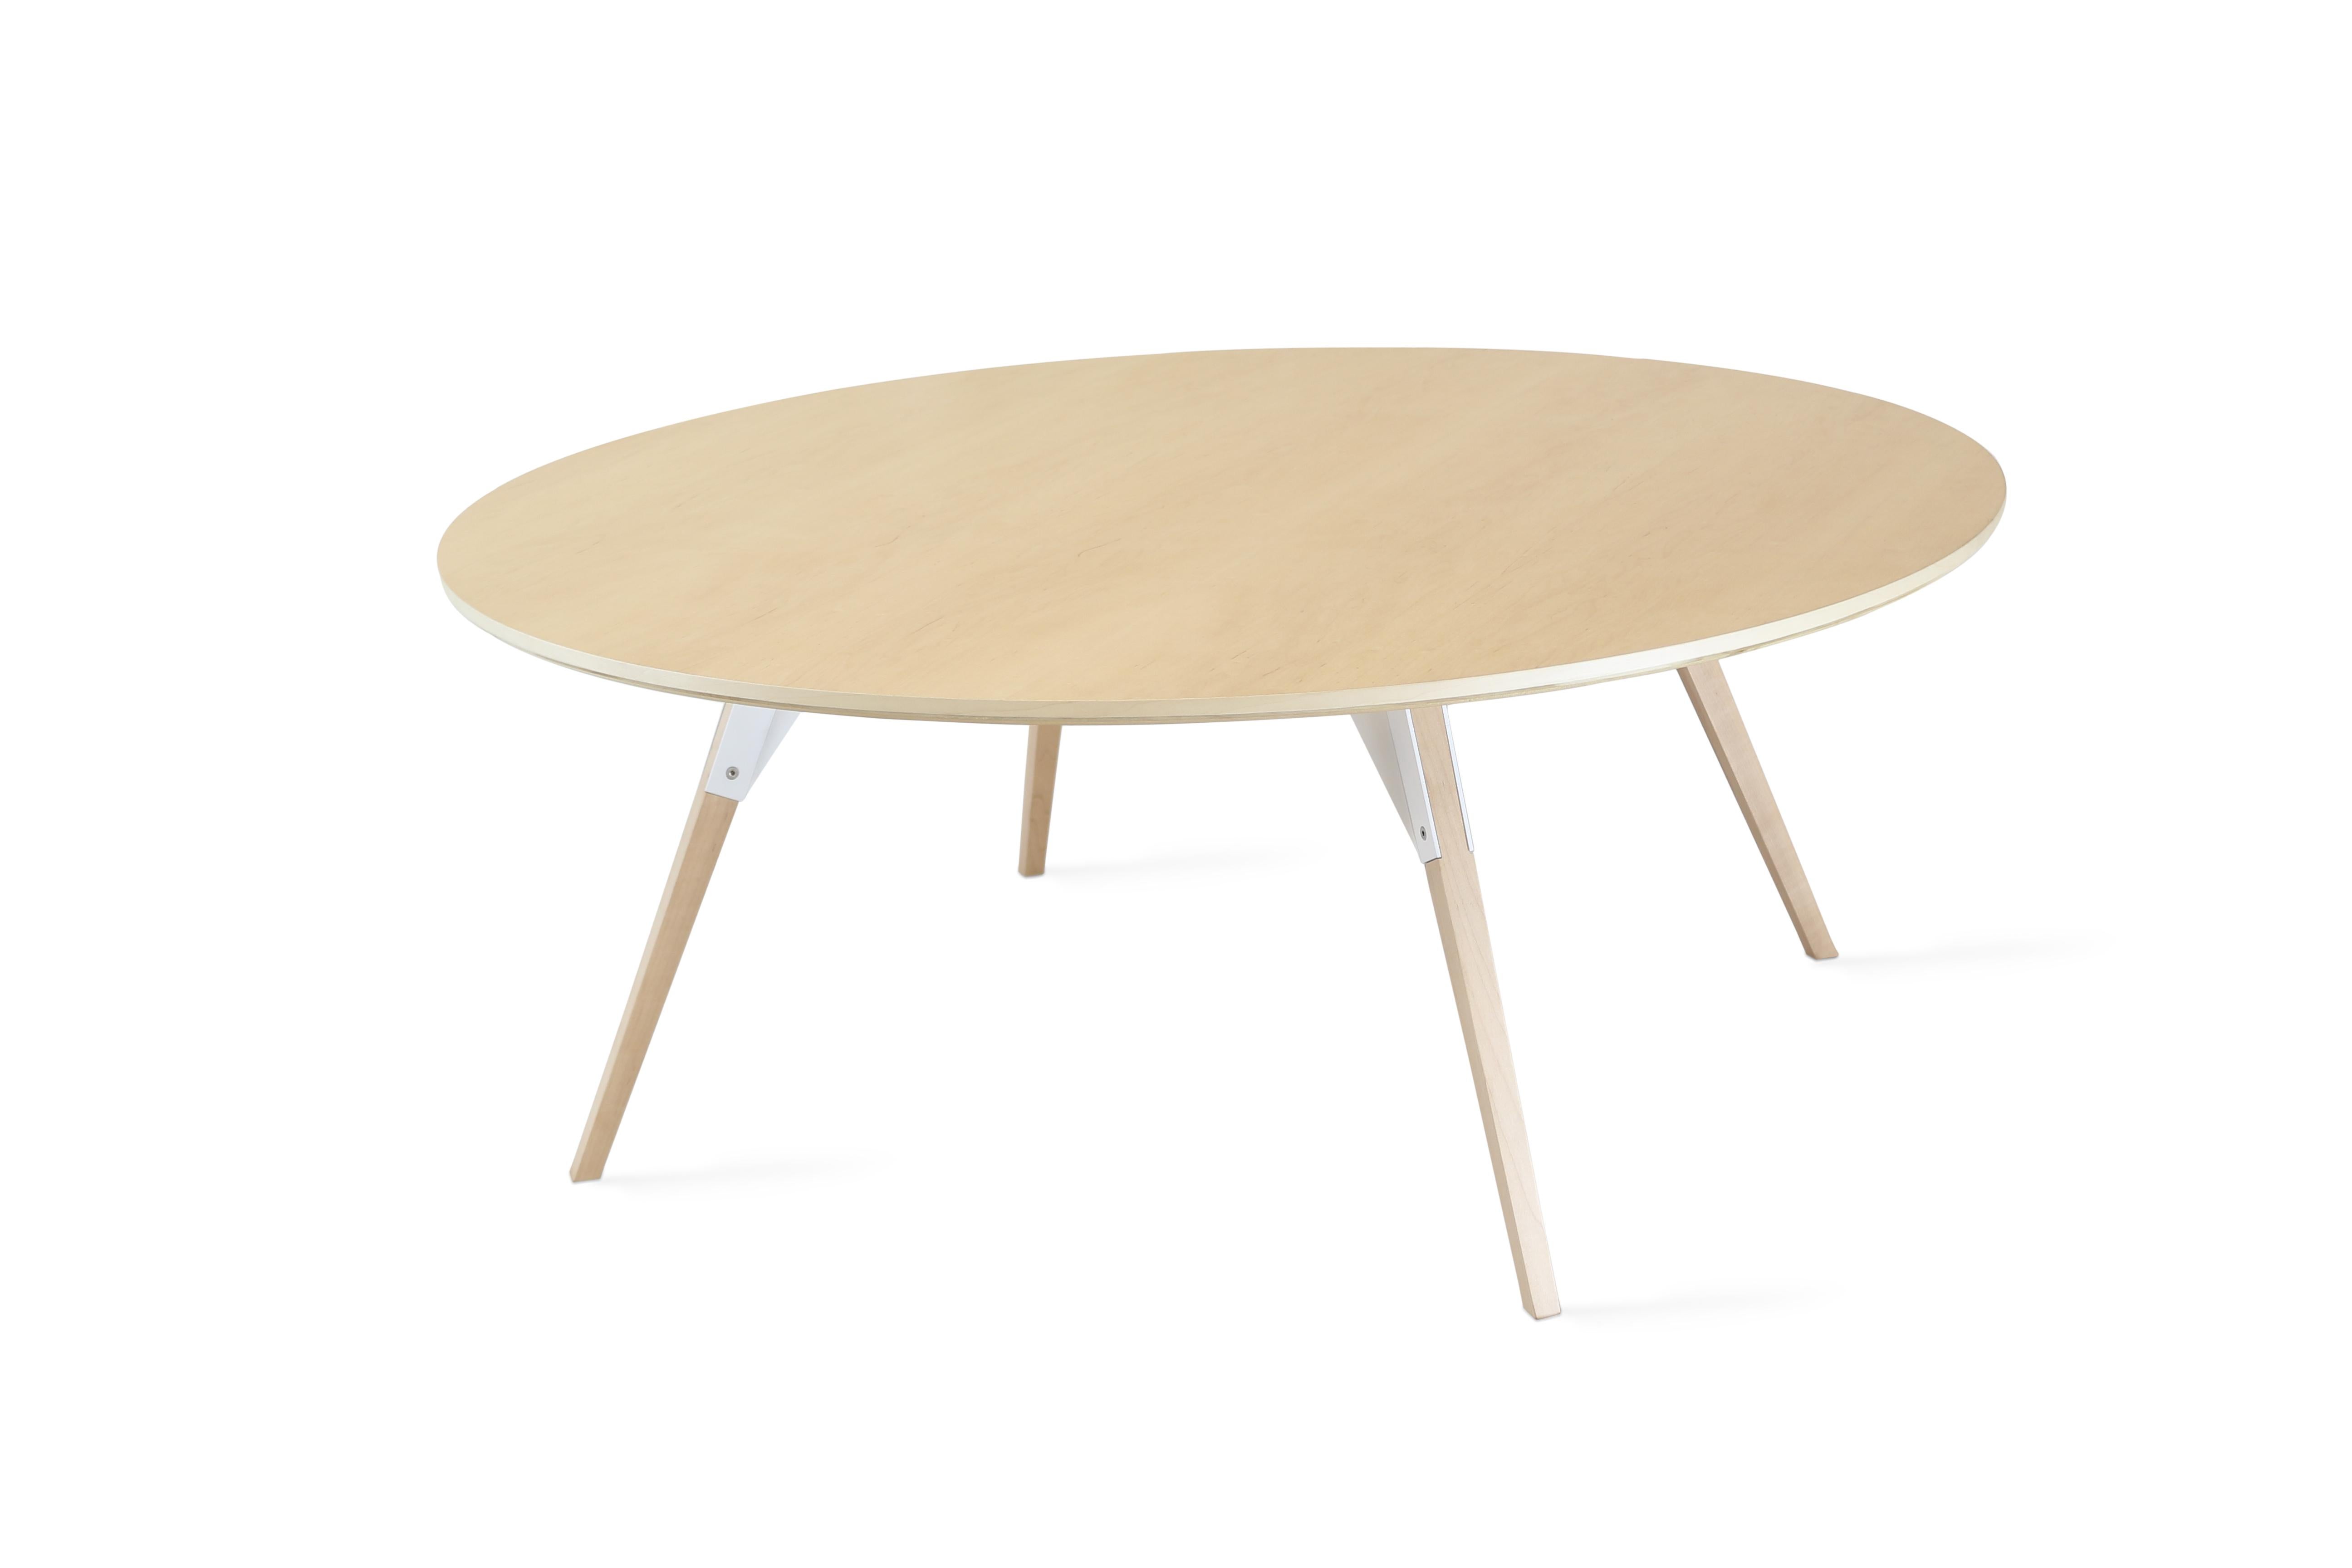 Die Clarke Collection ist in zehn verschiedenen Tischplattengrößen, zwei Holzarten und zwei Metalloberflächen erhältlich. Die freiliegenden Edelstahlbolzen verwischen die Grenze zwischen skandinavischem und industriellem Stil.
 